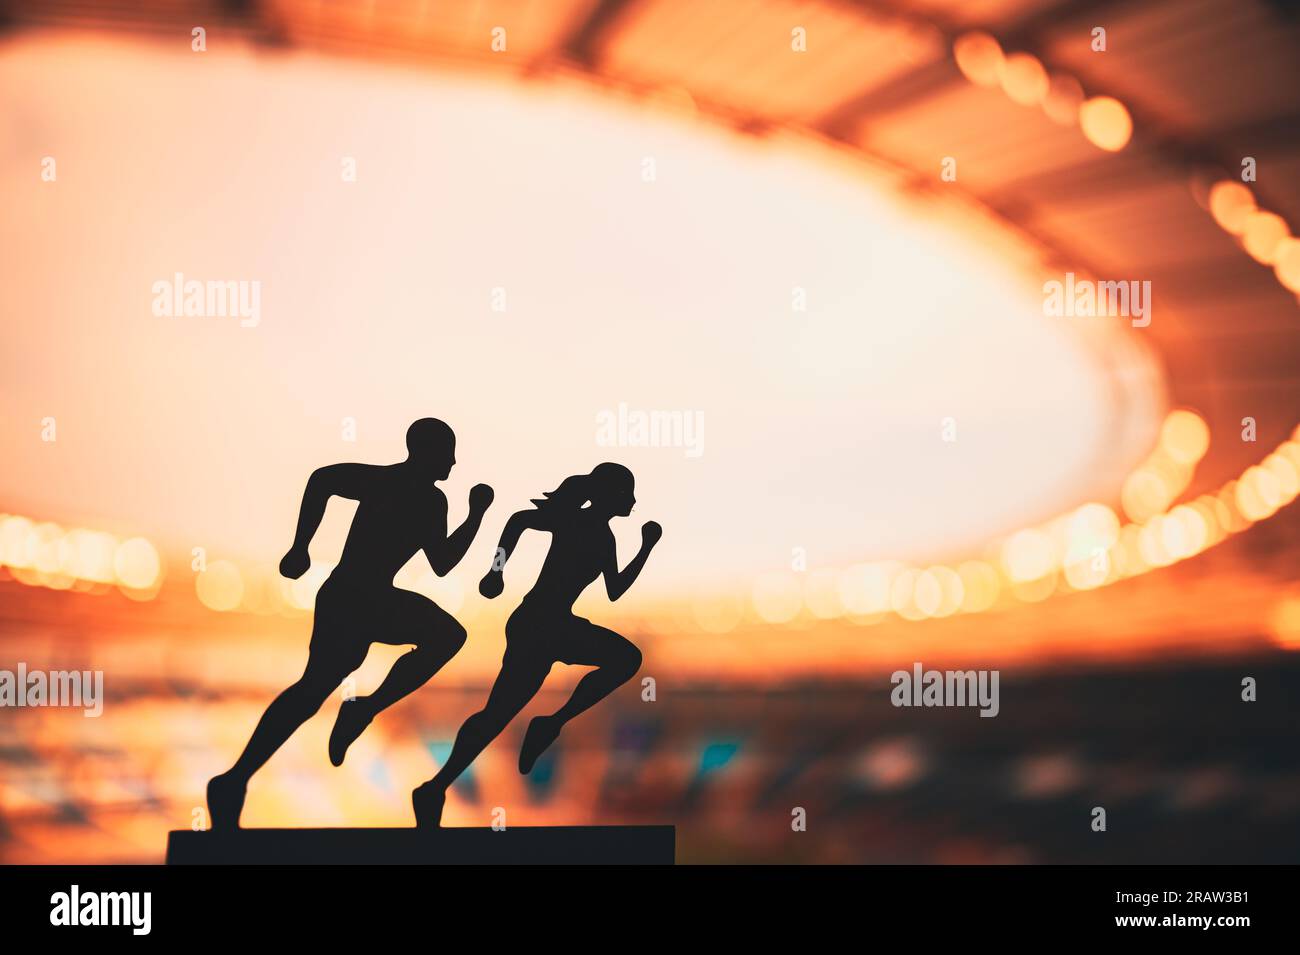 Gemeinsam nach Größe streben: Die Silhouetten männlicher und weiblicher Läufer setzen Grenzen und inspirieren sich gegenseitig in einem modernen Sportstadion. Stockfoto